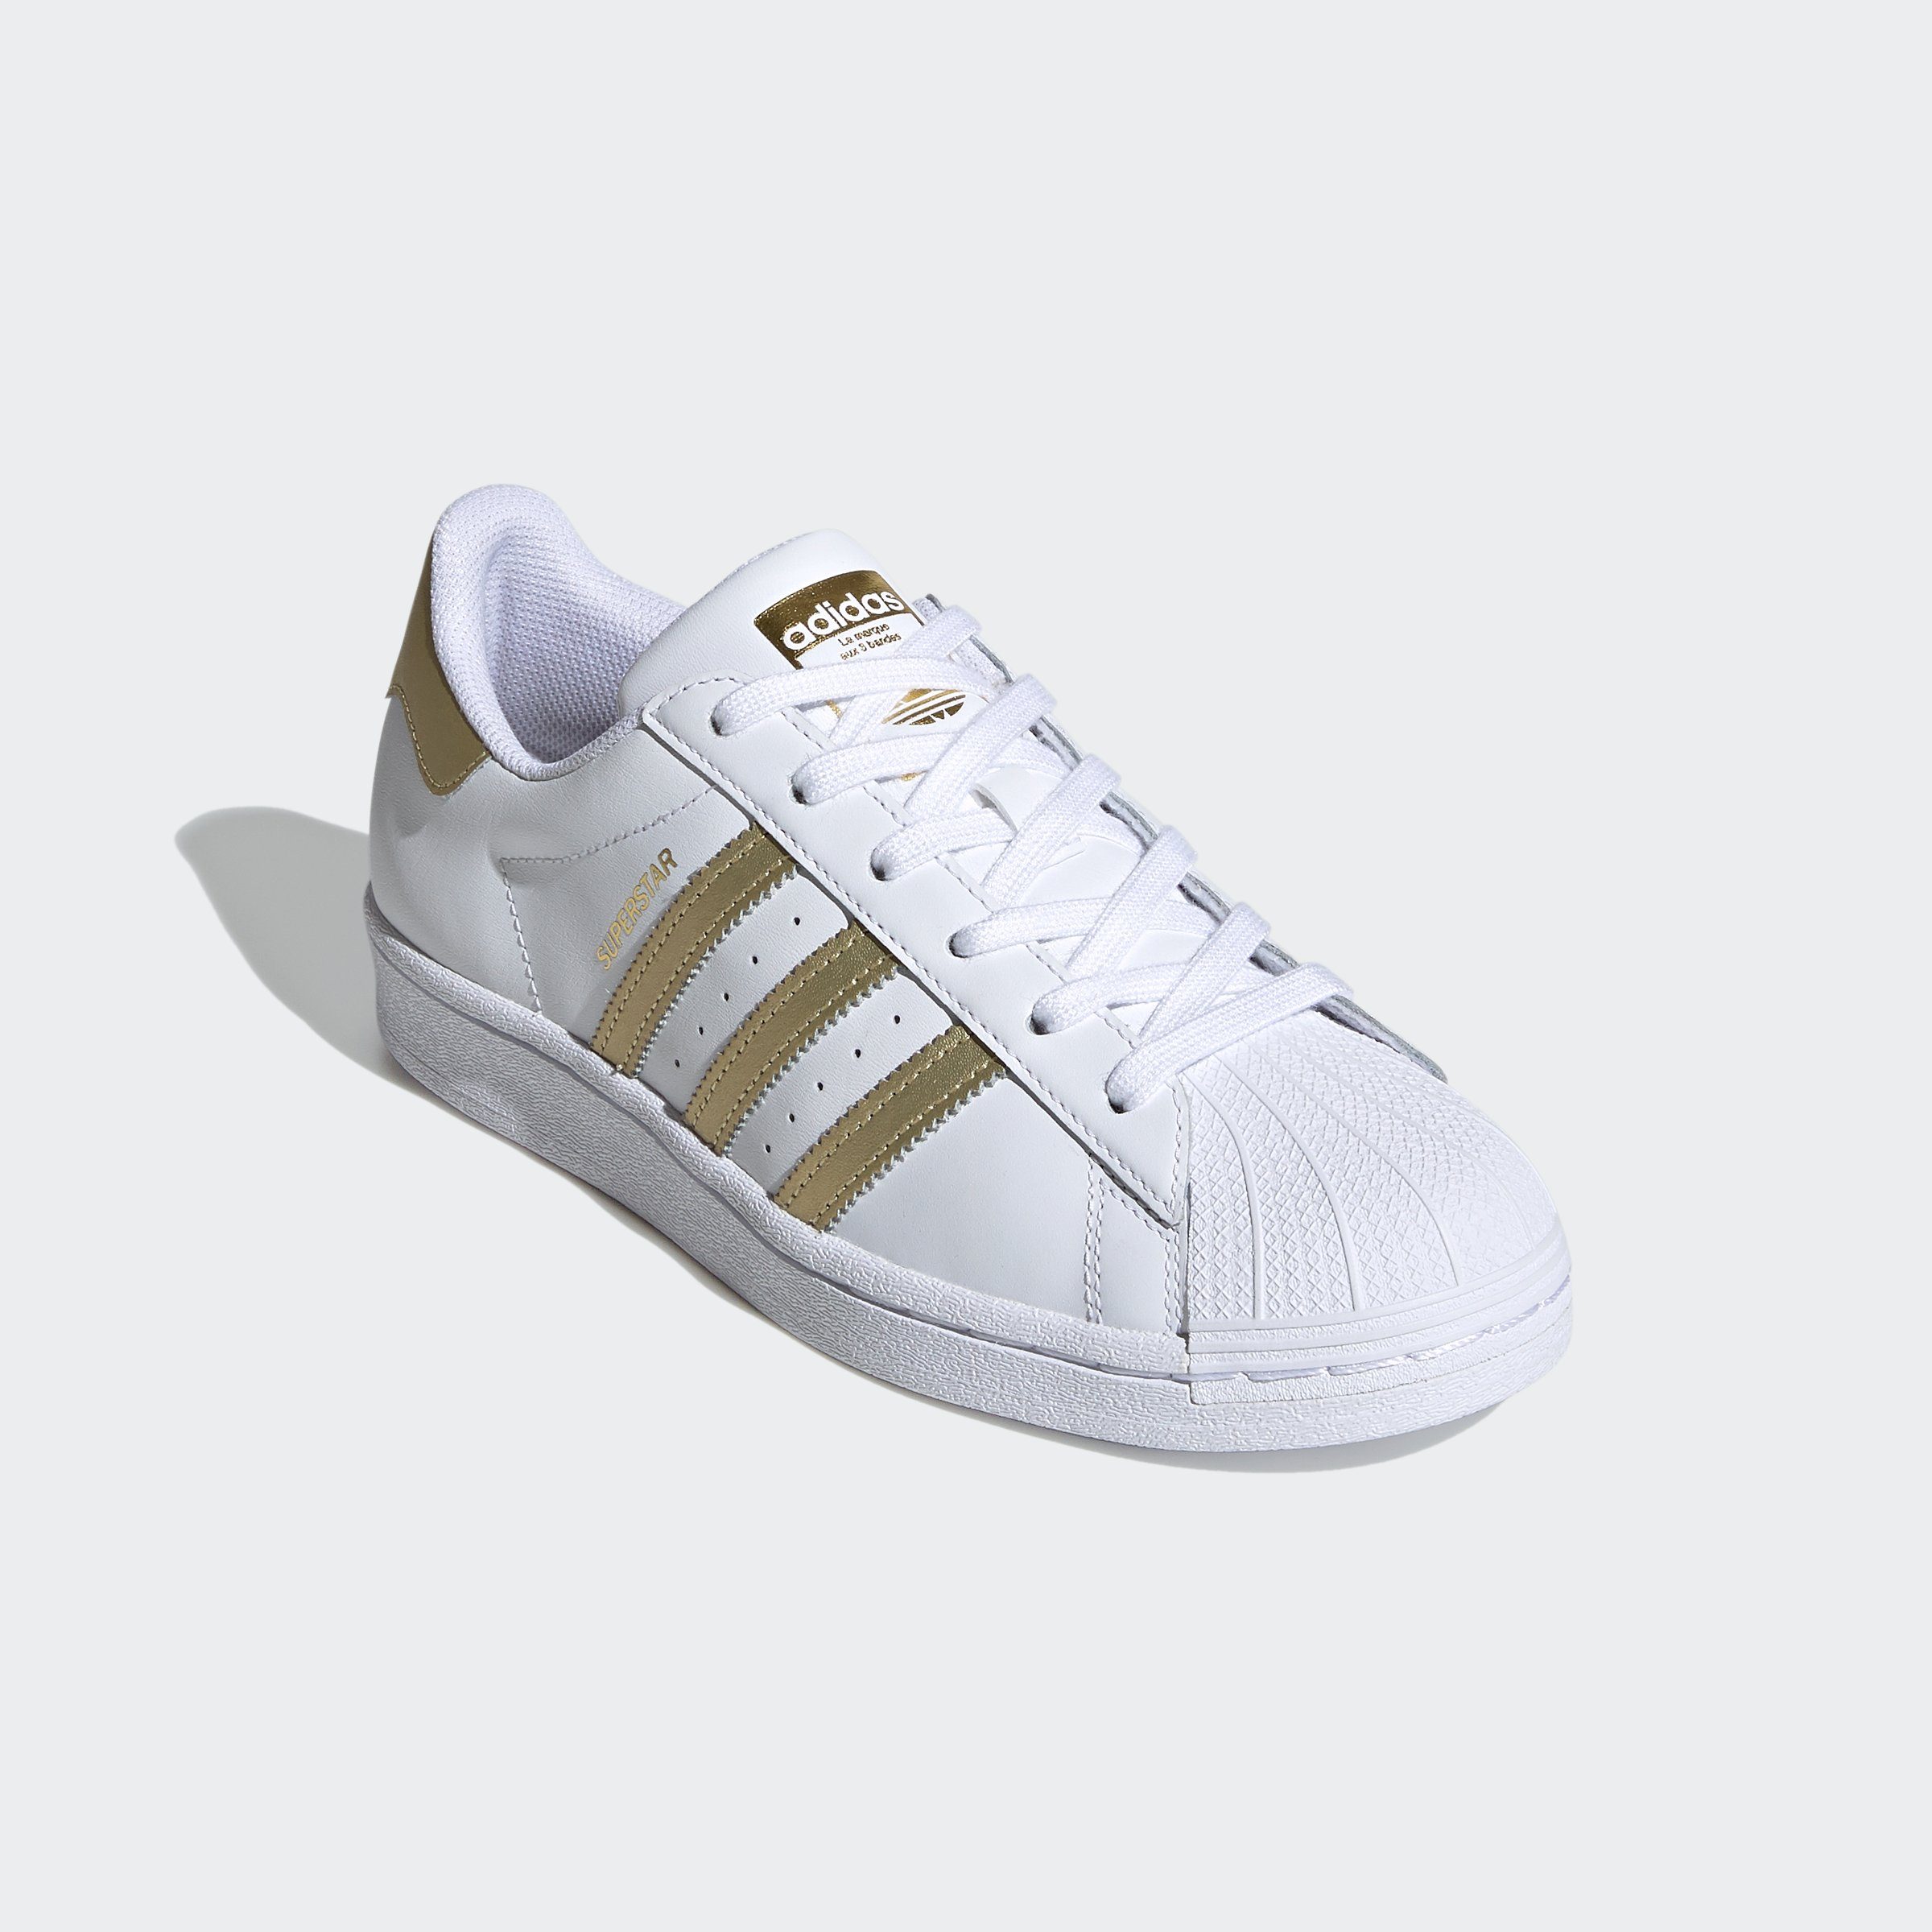 adidas Originals SUPERSTAR Sneaker, Der legendäre Sneaker mit der Shell Toe  und Details in Gold-Optik.